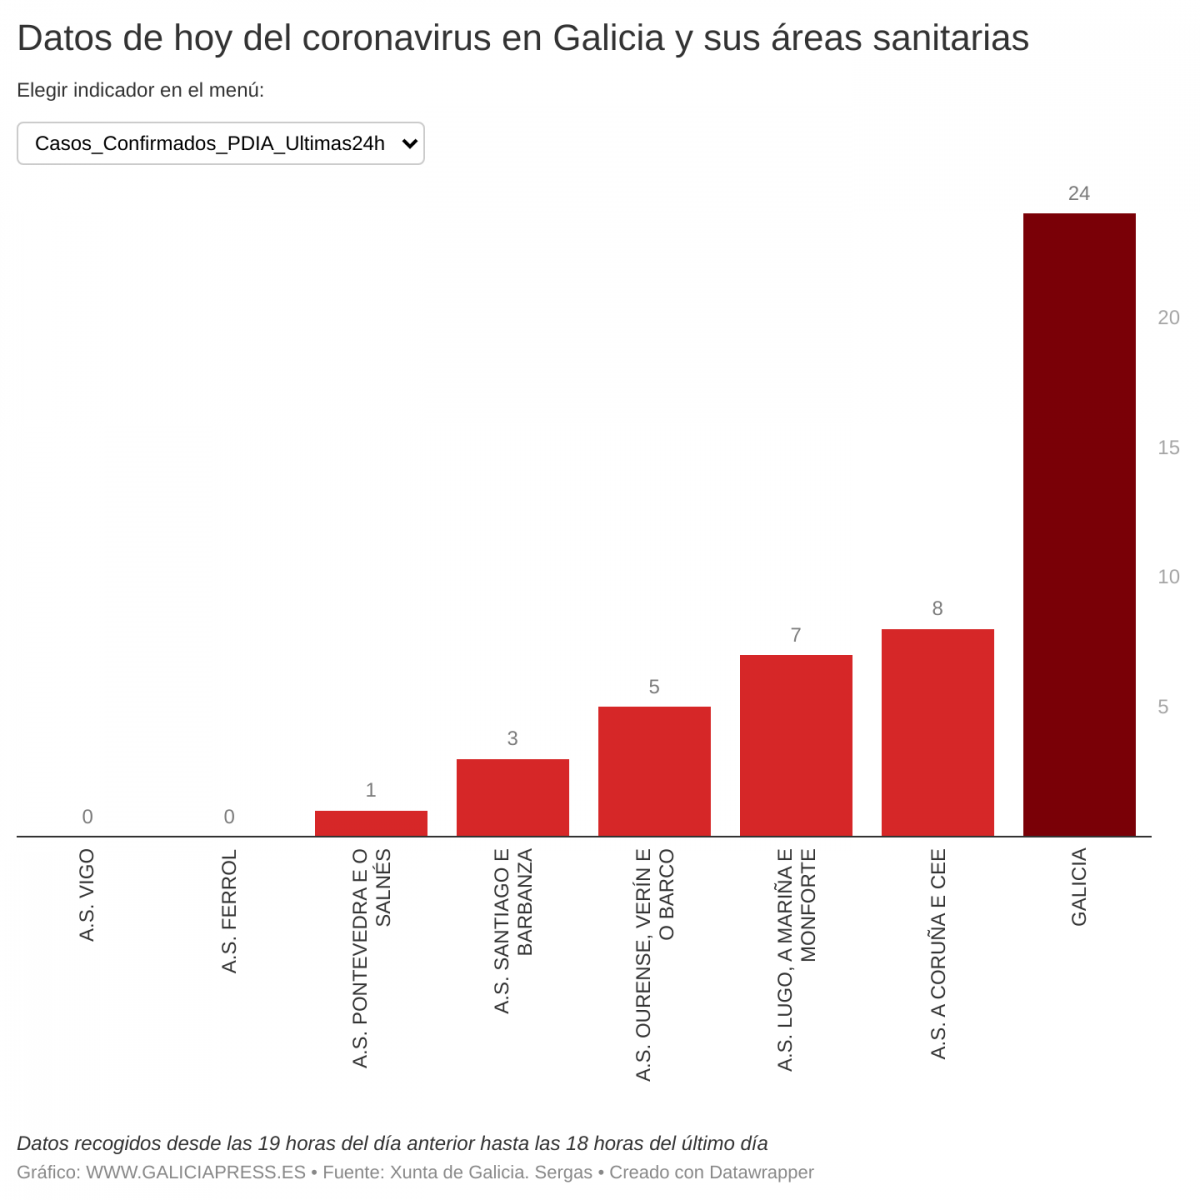 OJ8D8 datos de hoy del coronavirus en galicia y sus reas sanitarias  (1)